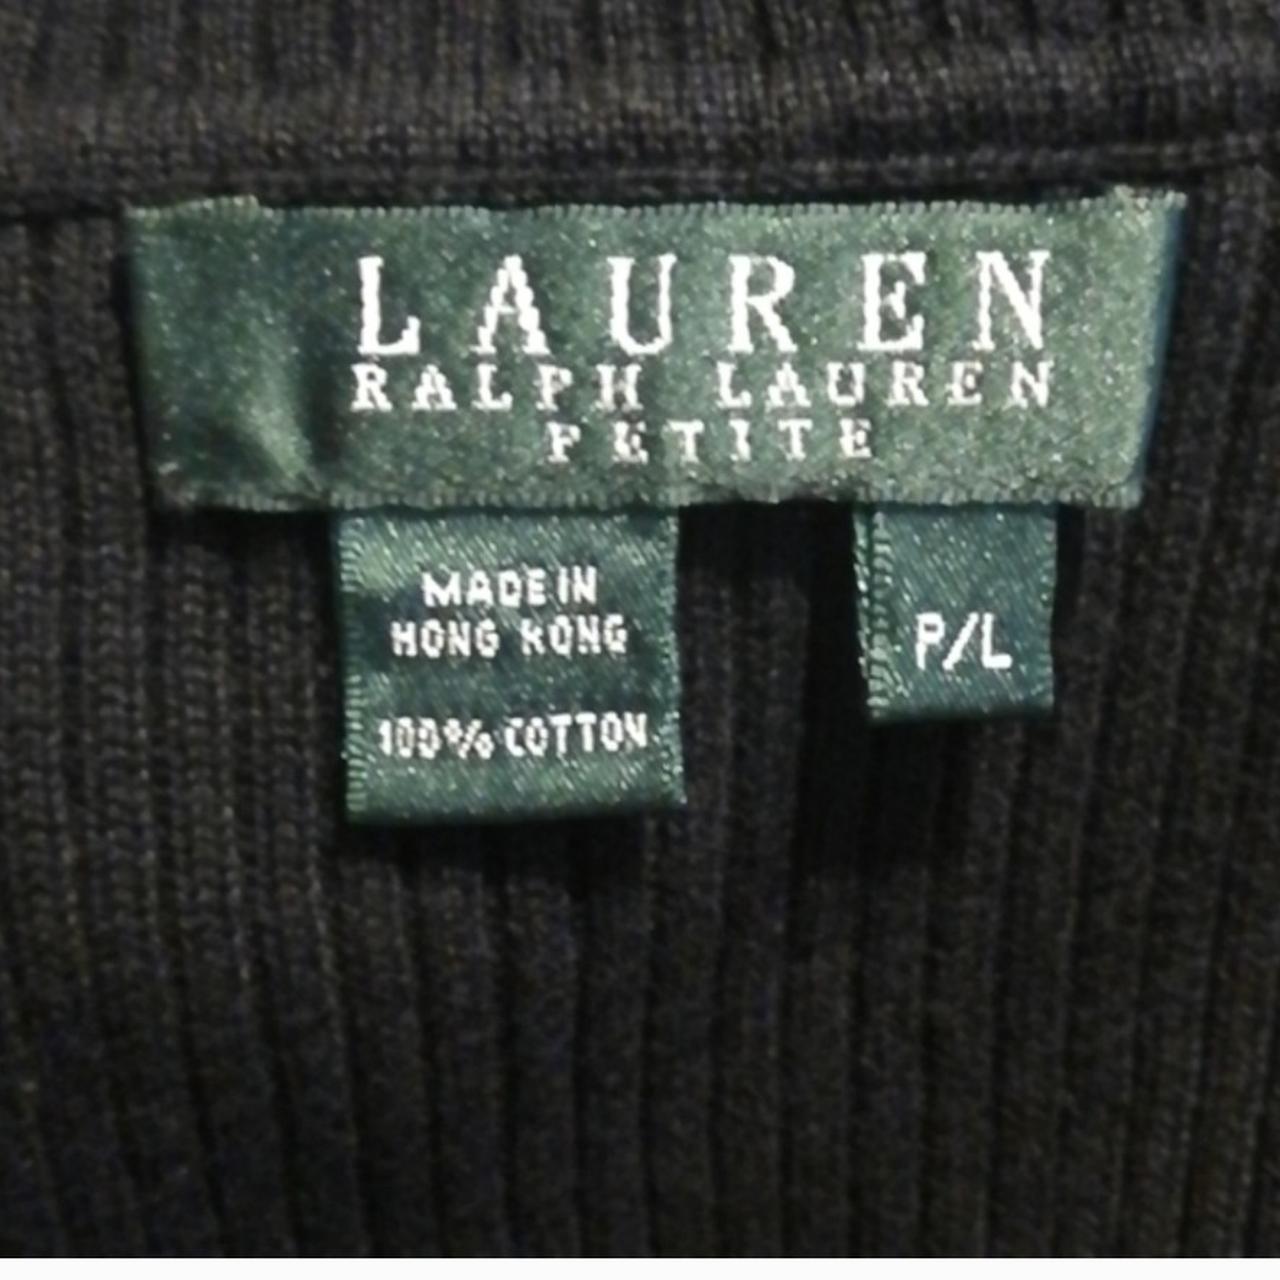 Black Ribbed turtleneck from Lauren Ralph Lauren.... - Depop